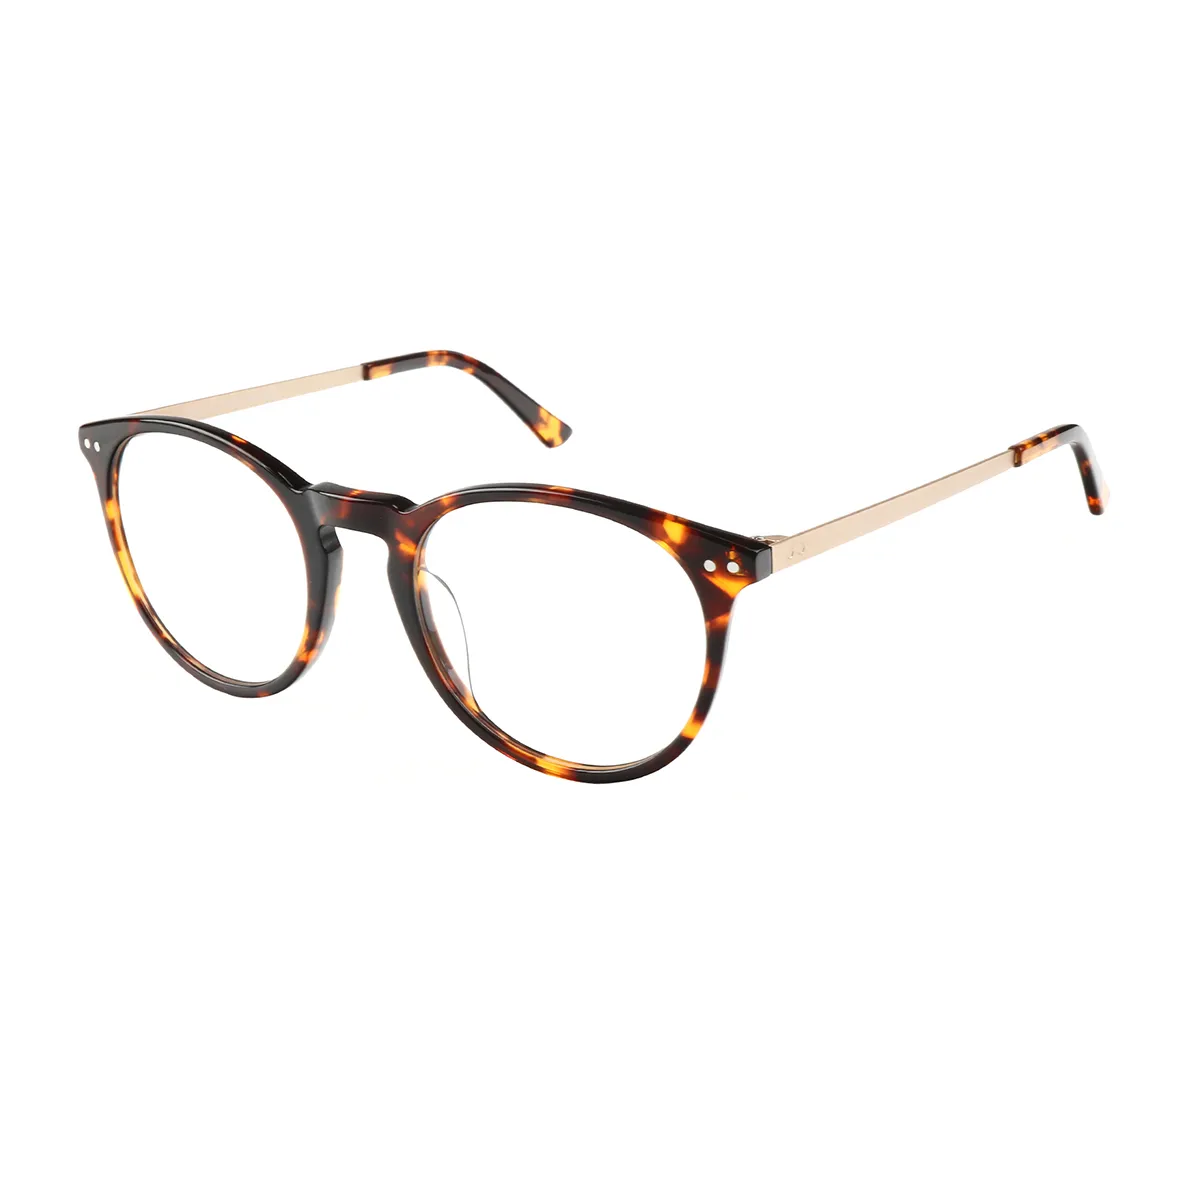 Copeland - Round Tortoiseshell Glasses for Women - EFE